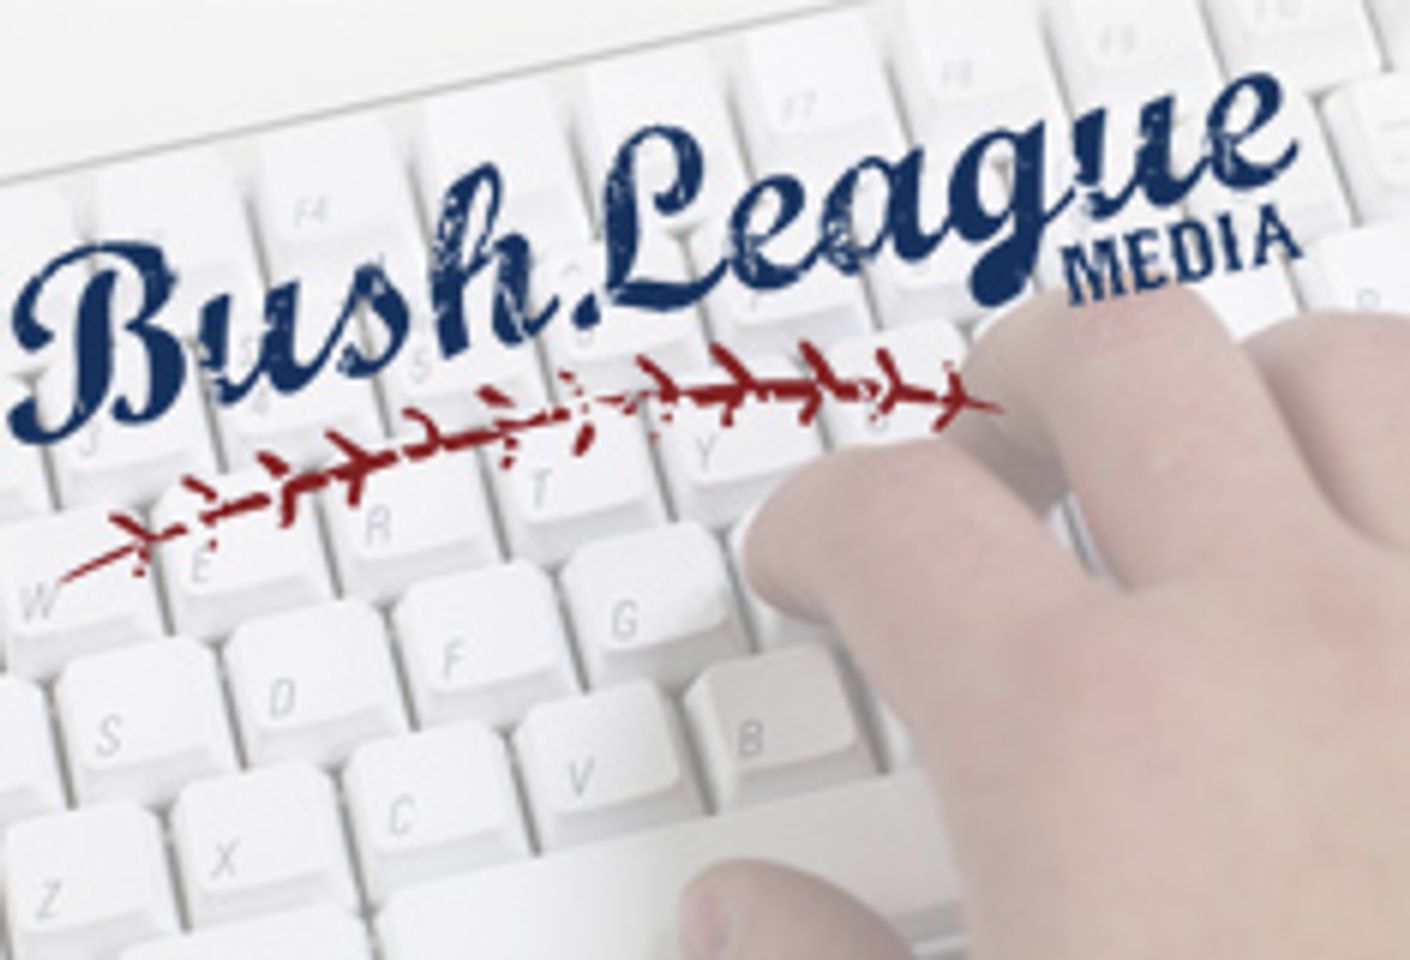 Brett Reisner Launches Bush League Media